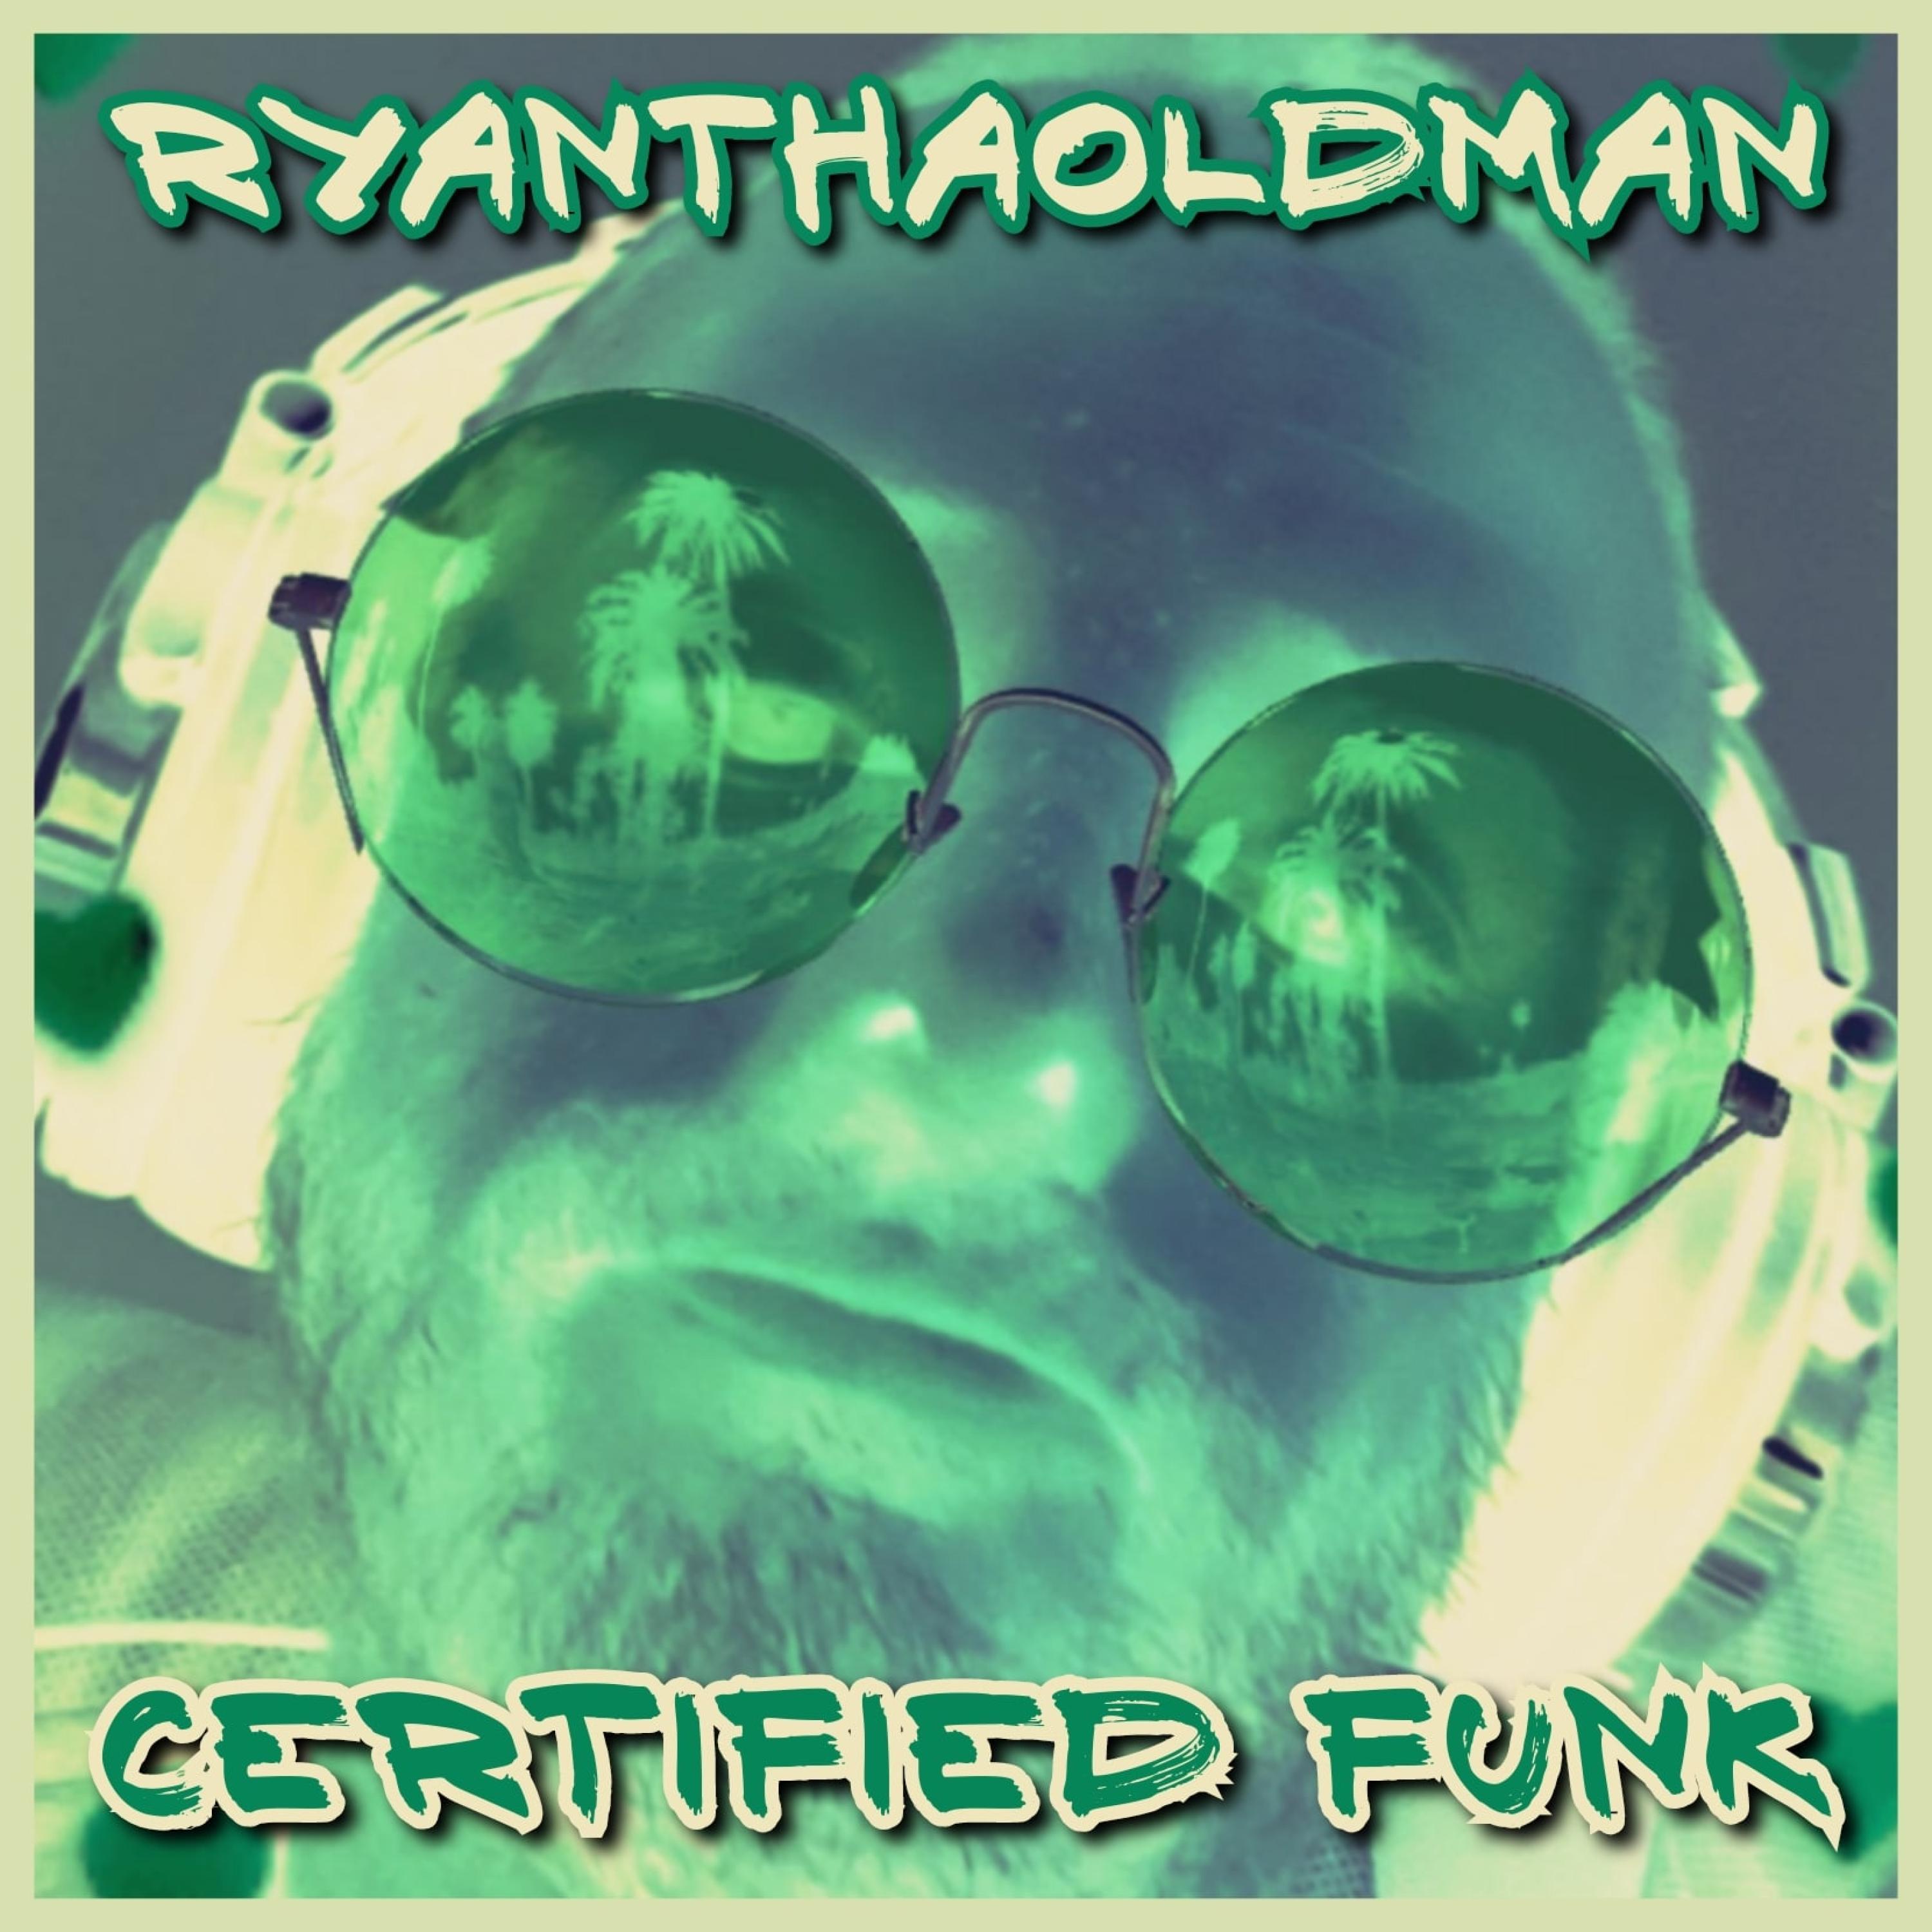 RyanThaOldMan - MaestroOfFunk